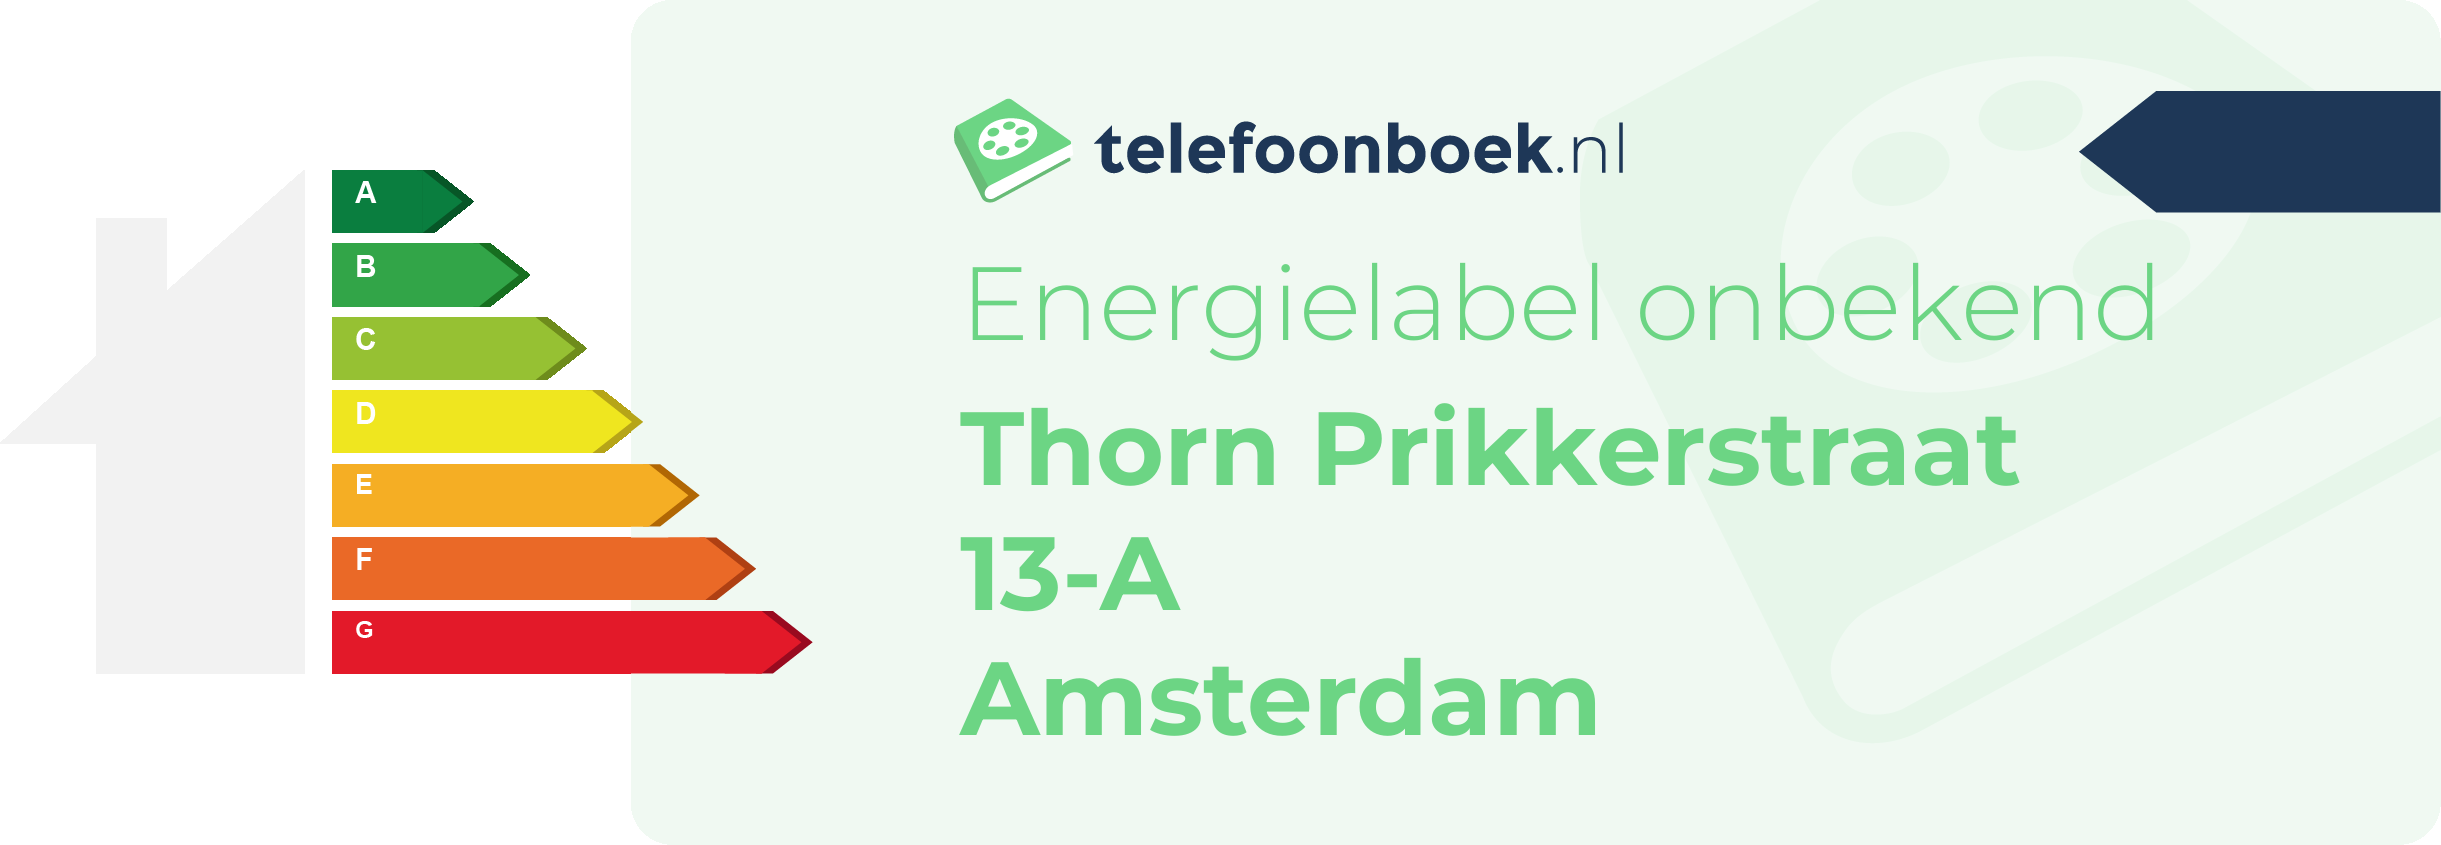 Energielabel Thorn Prikkerstraat 13-A Amsterdam